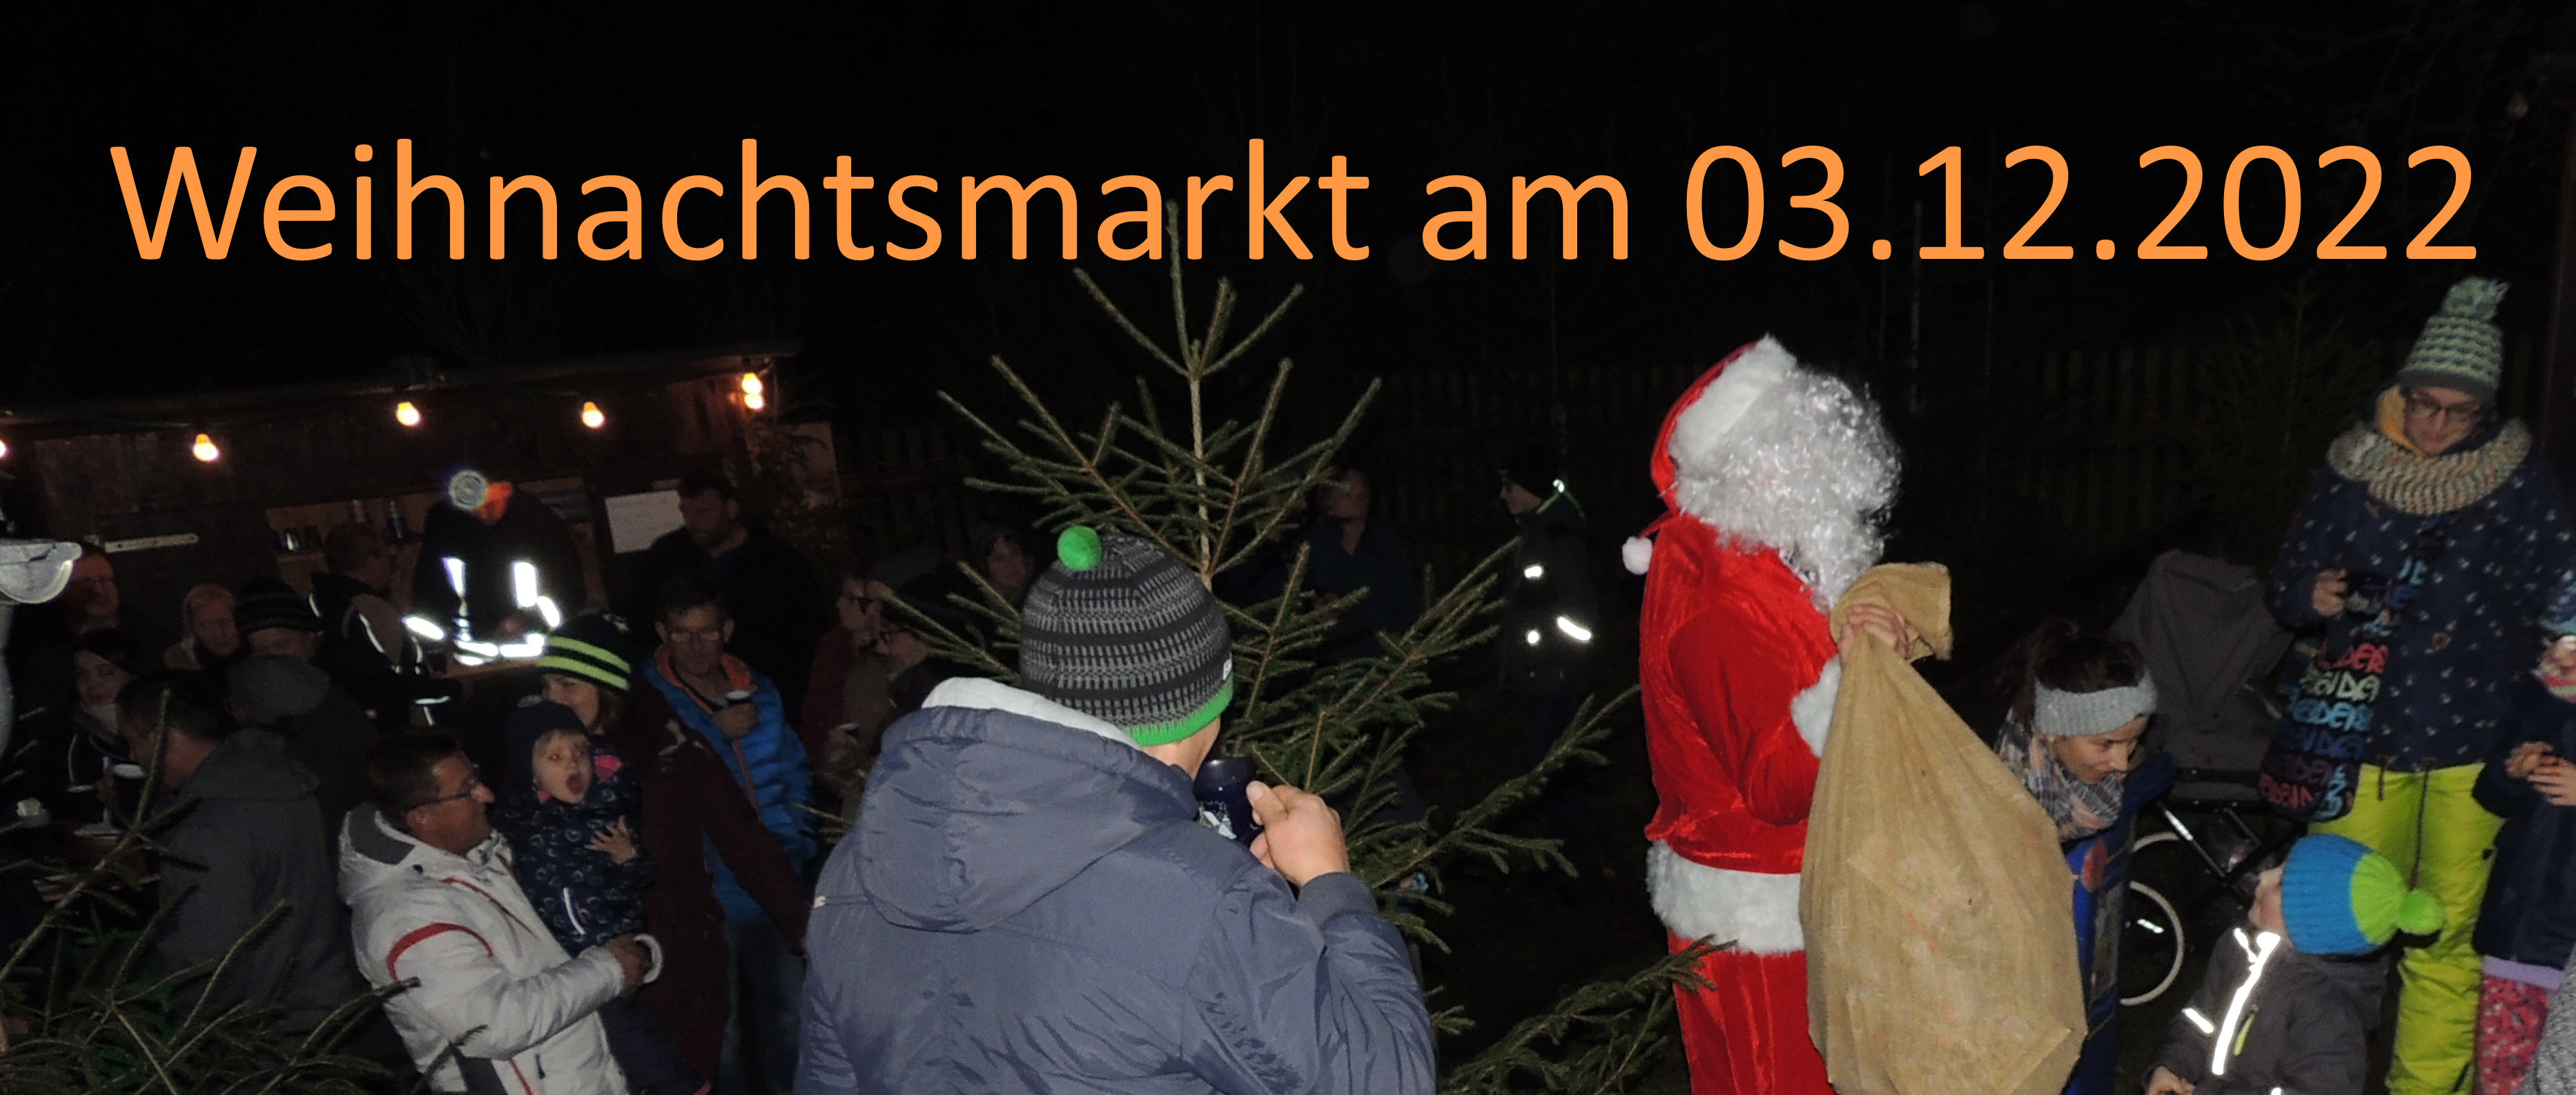 Bilder/Aktuell/Weihnachtsmarkt_2022.png